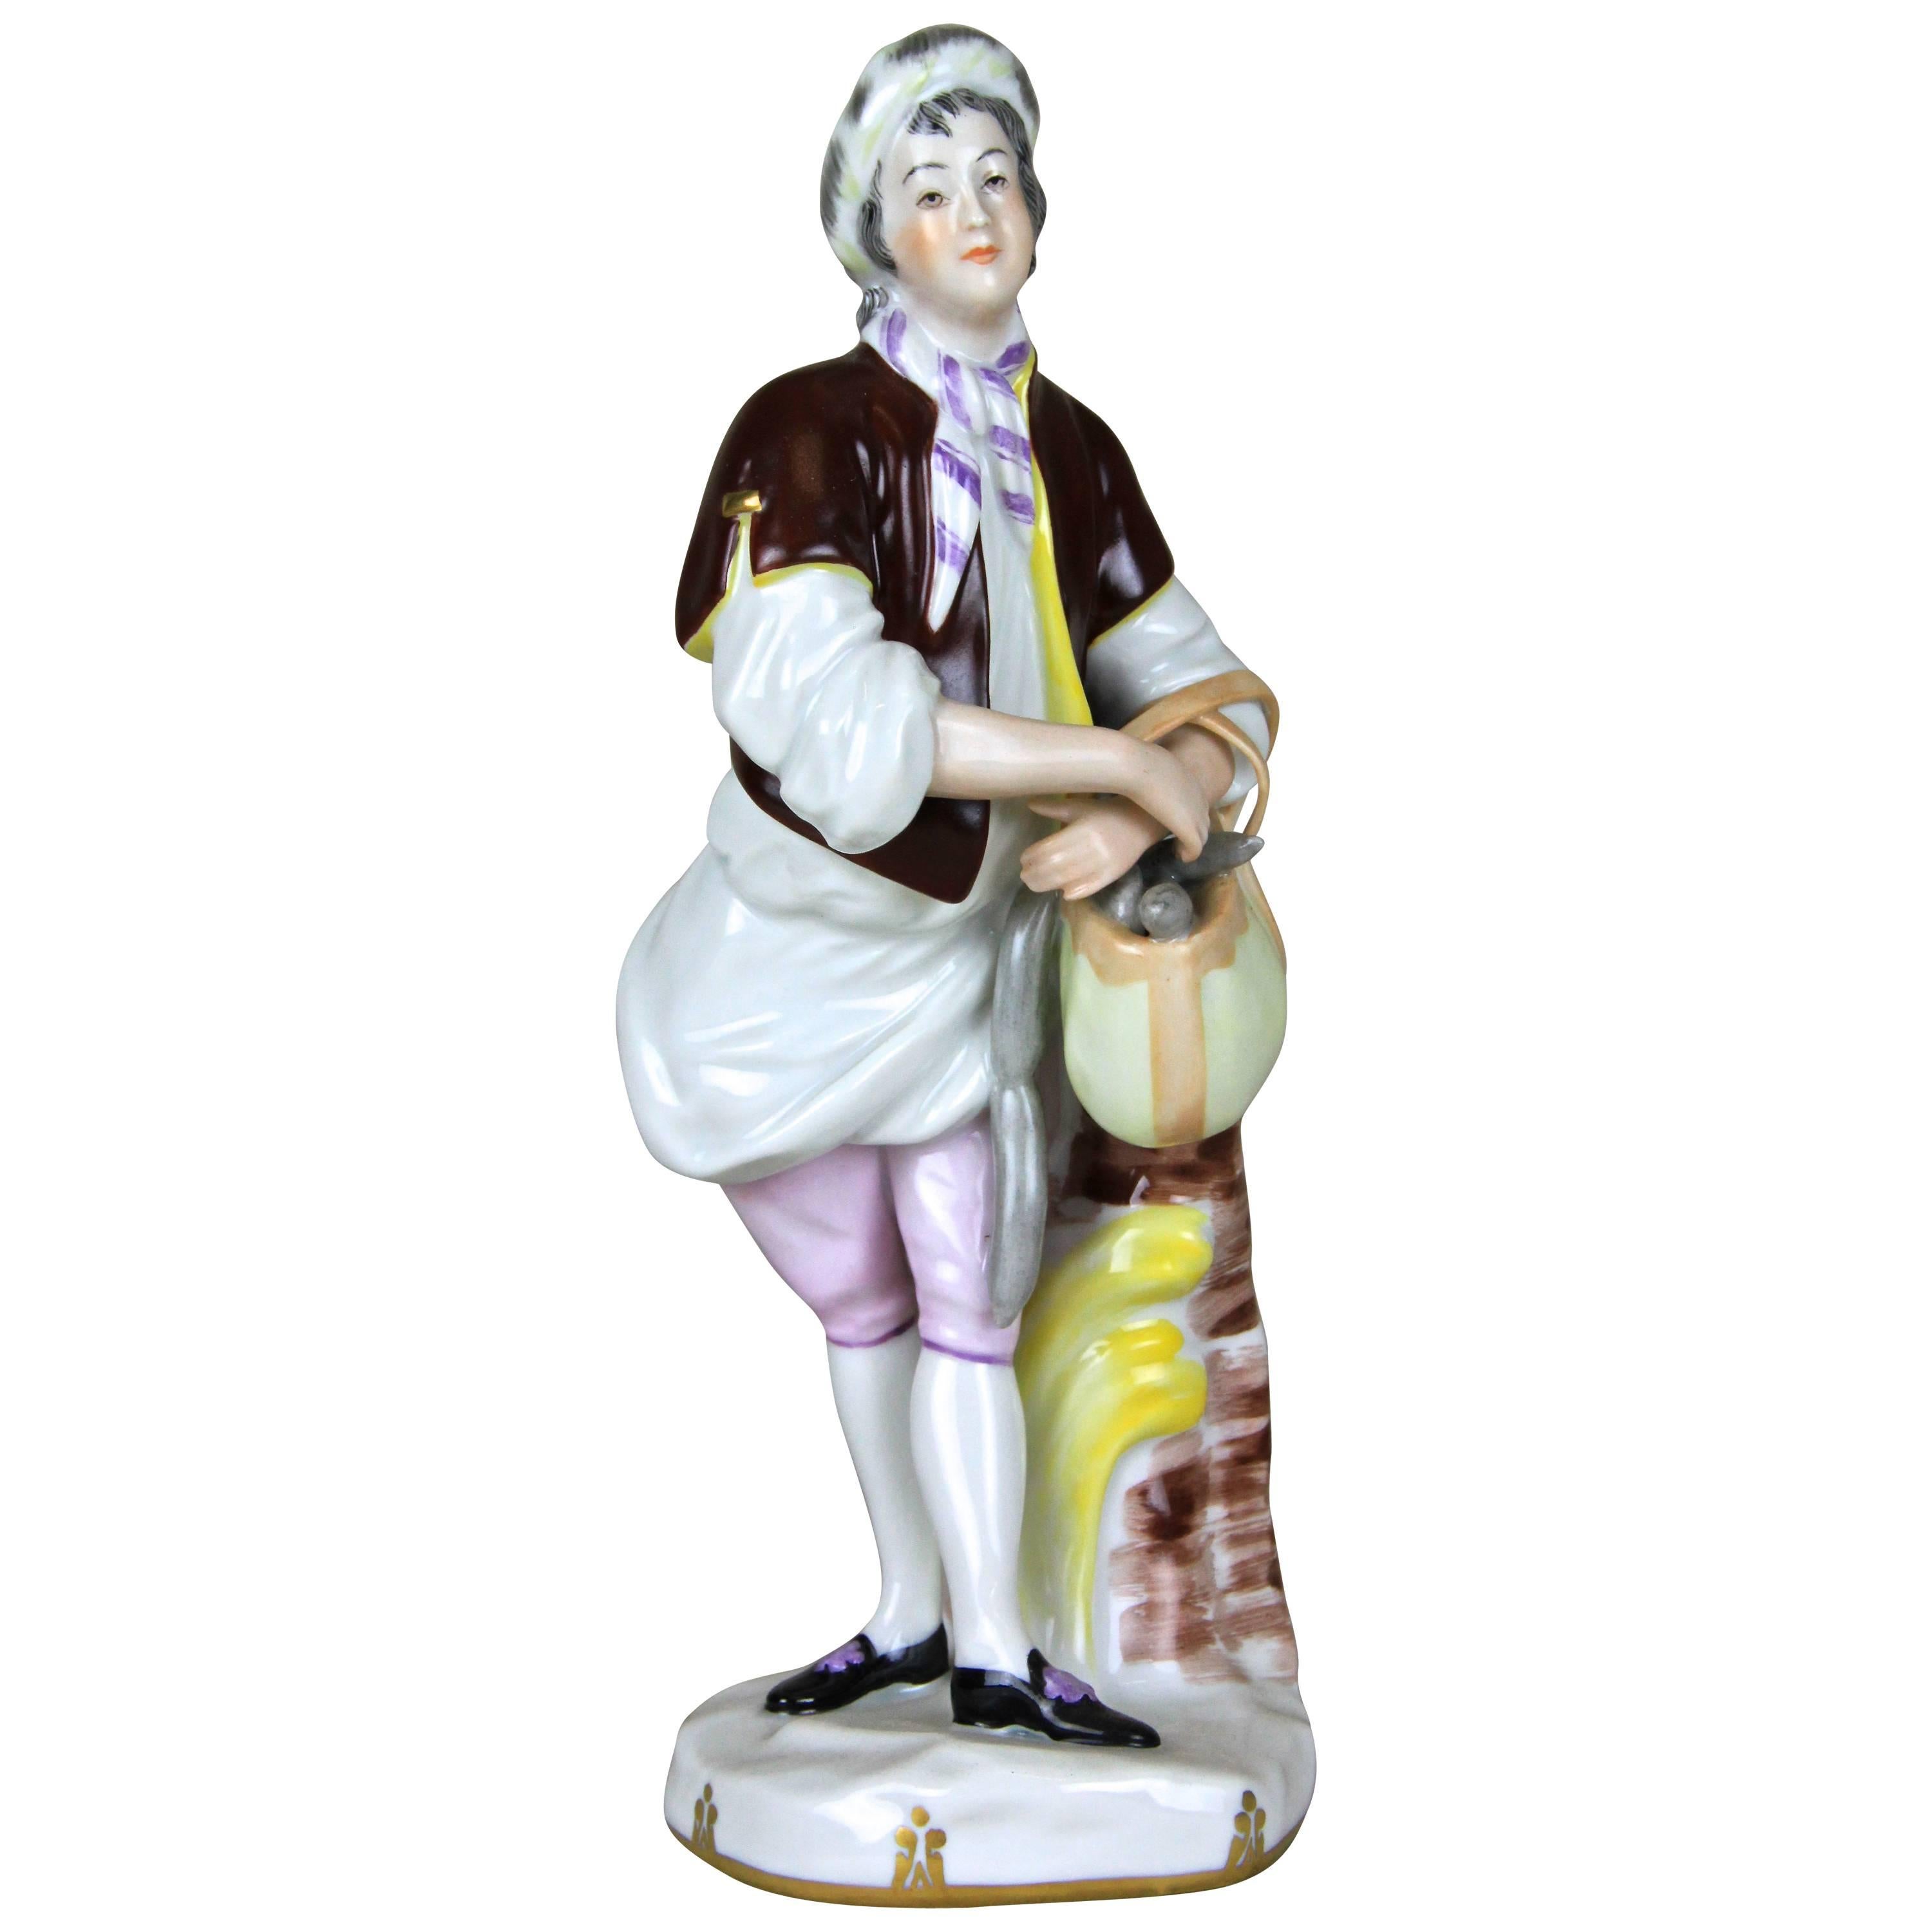 Porcelain Figurine "The Salami Salesman" by Augarten Vienna, Austria, circa 1950